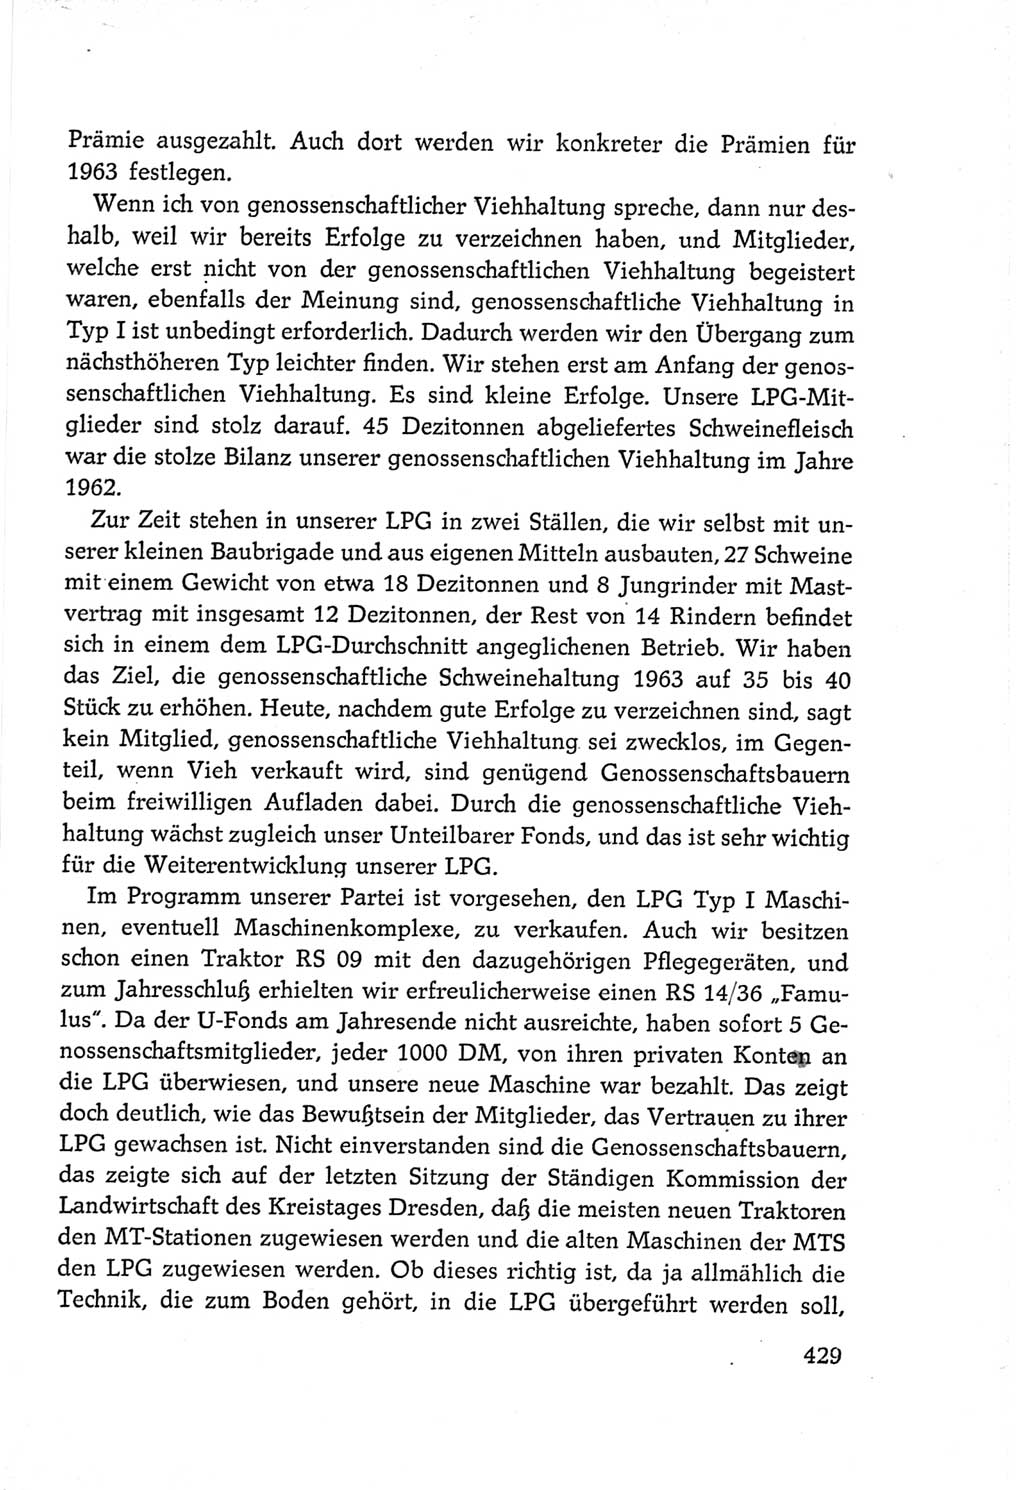 Protokoll der Verhandlungen des Ⅵ. Parteitages der Sozialistischen Einheitspartei Deutschlands (SED) [Deutsche Demokratische Republik (DDR)] 1963, Band Ⅲ, Seite 429 (Prot. Verh. Ⅵ. PT SED DDR 1963, Bd. Ⅲ, S. 429)